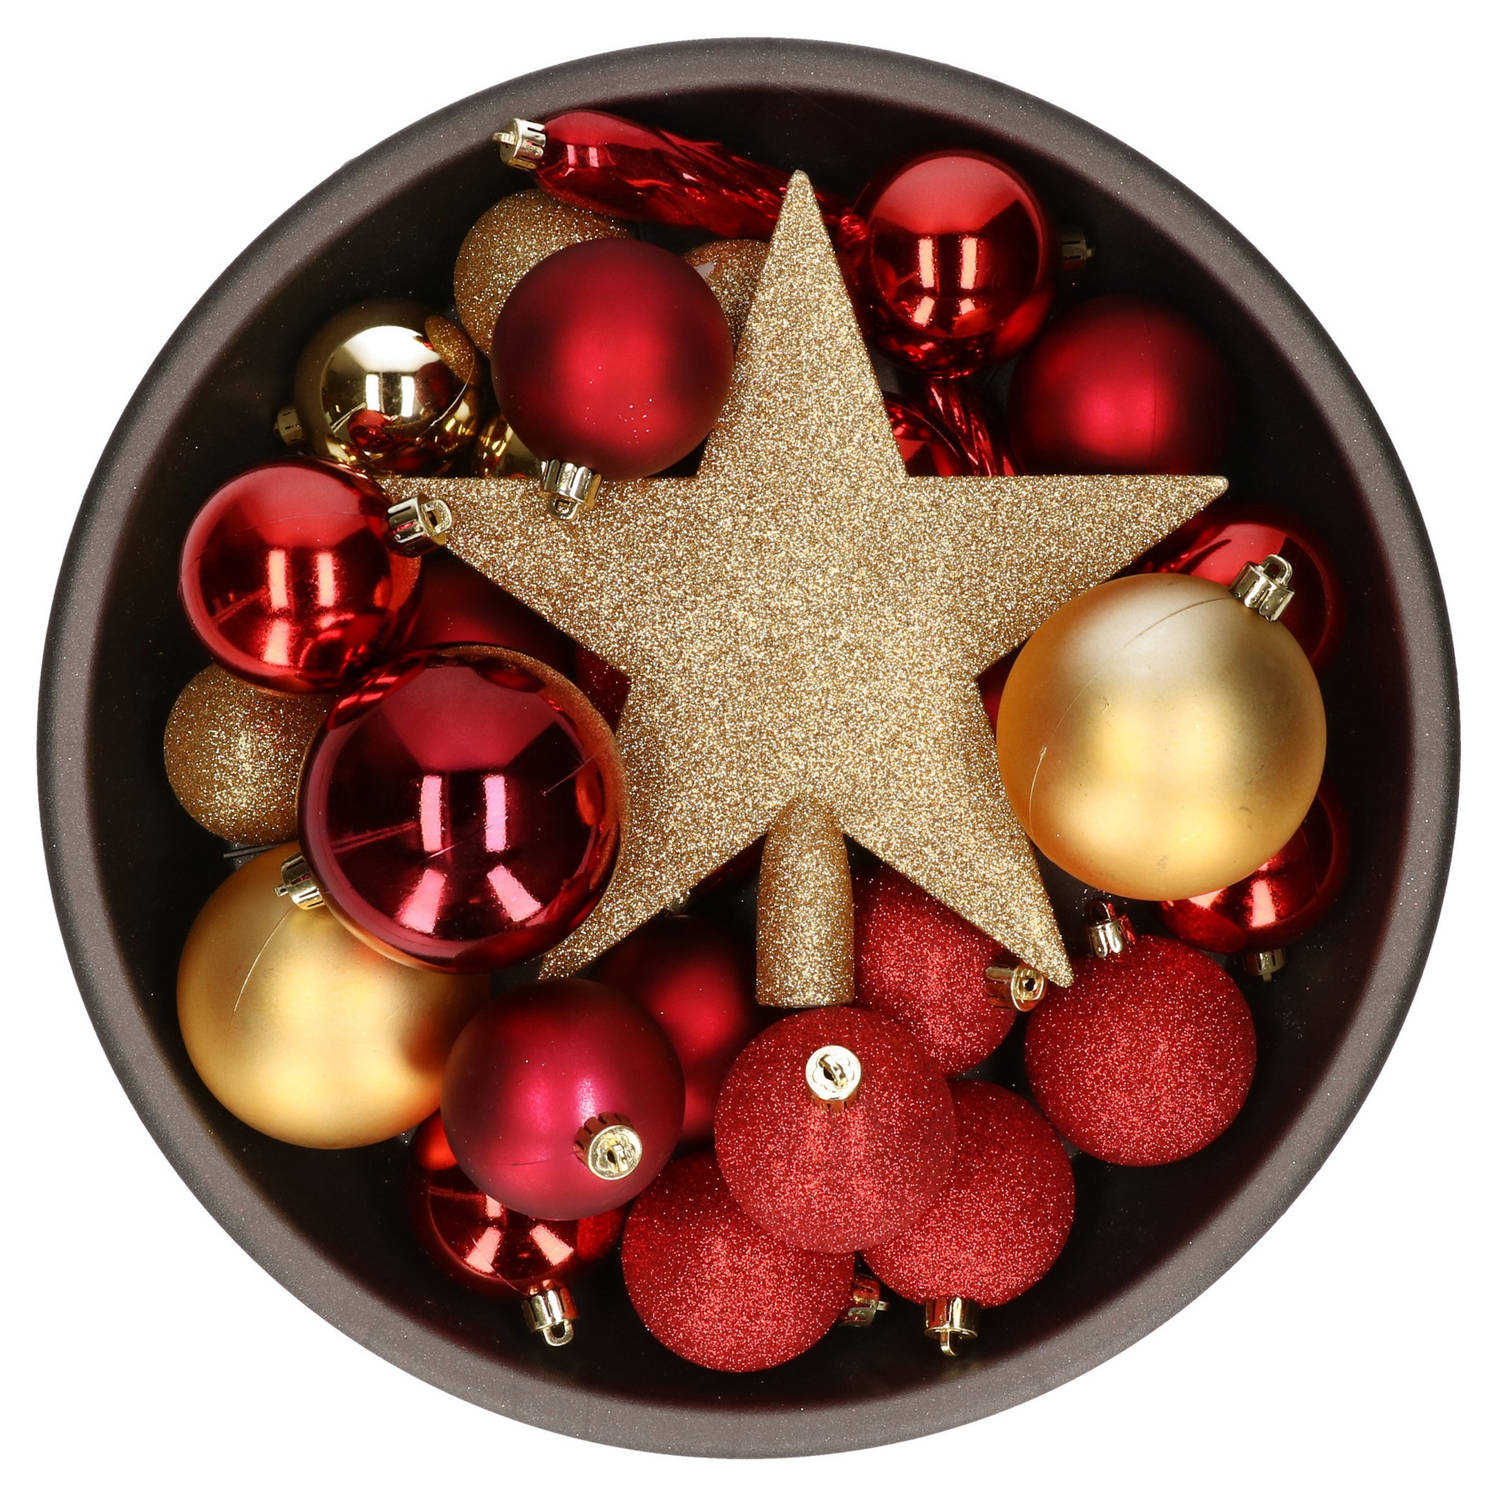 33x stuks kunststof kerstballen met piek 5-6-8 cm rood/goud incl. haakjes - Kerstbal